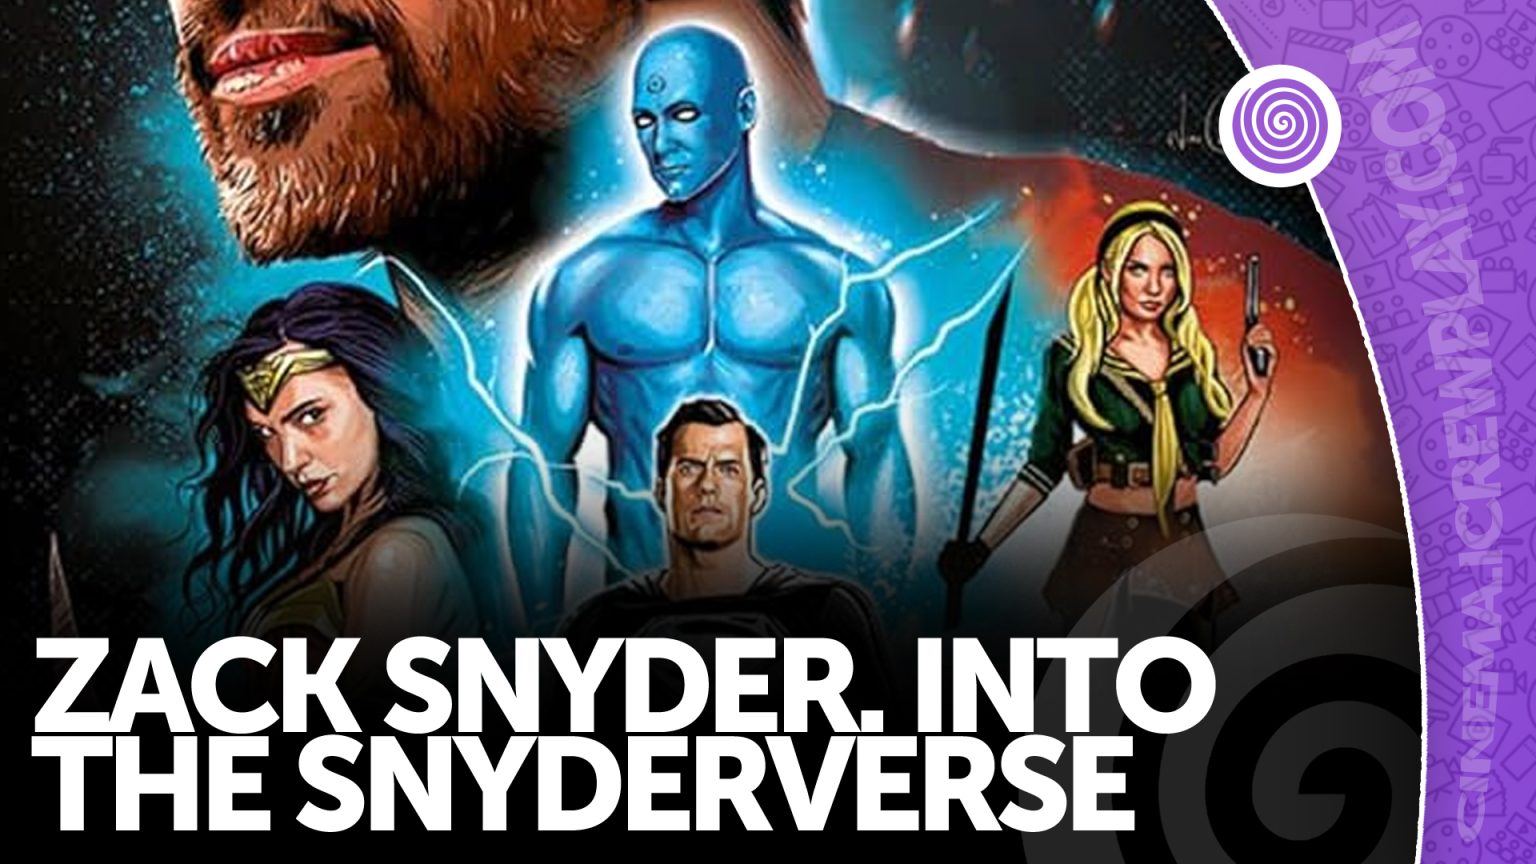 Zack Snyder Into the Snyderverse